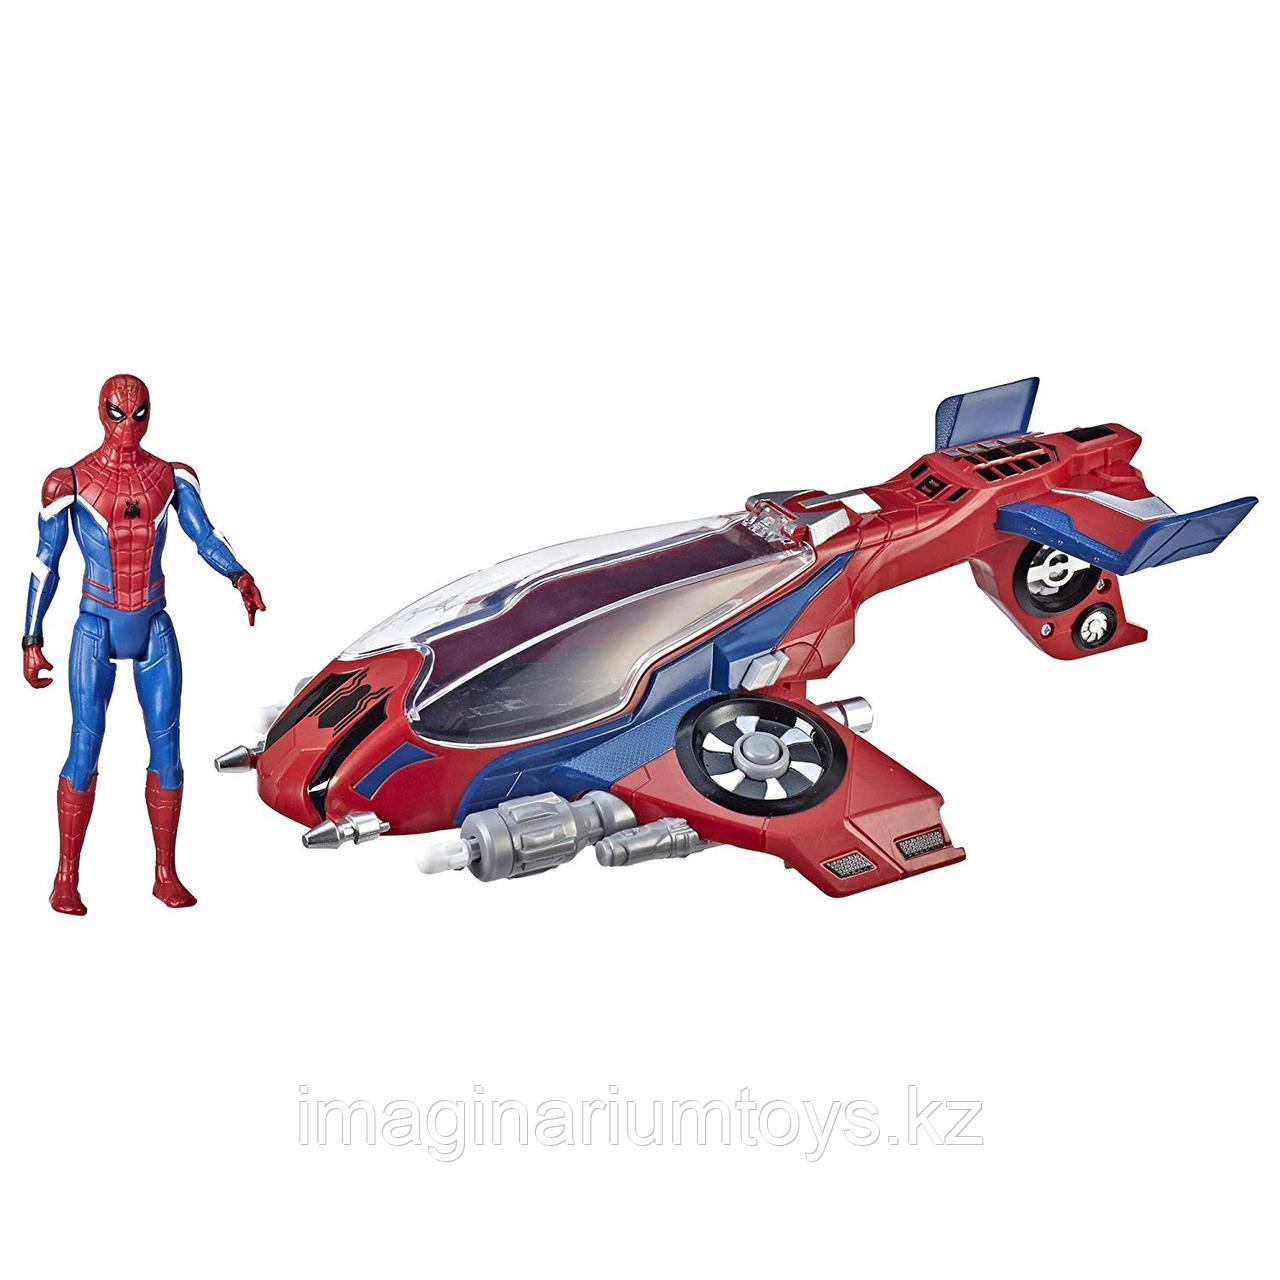 Человек-паук Spiderman с самолетом. Игровой набор Hasbro, фото 1